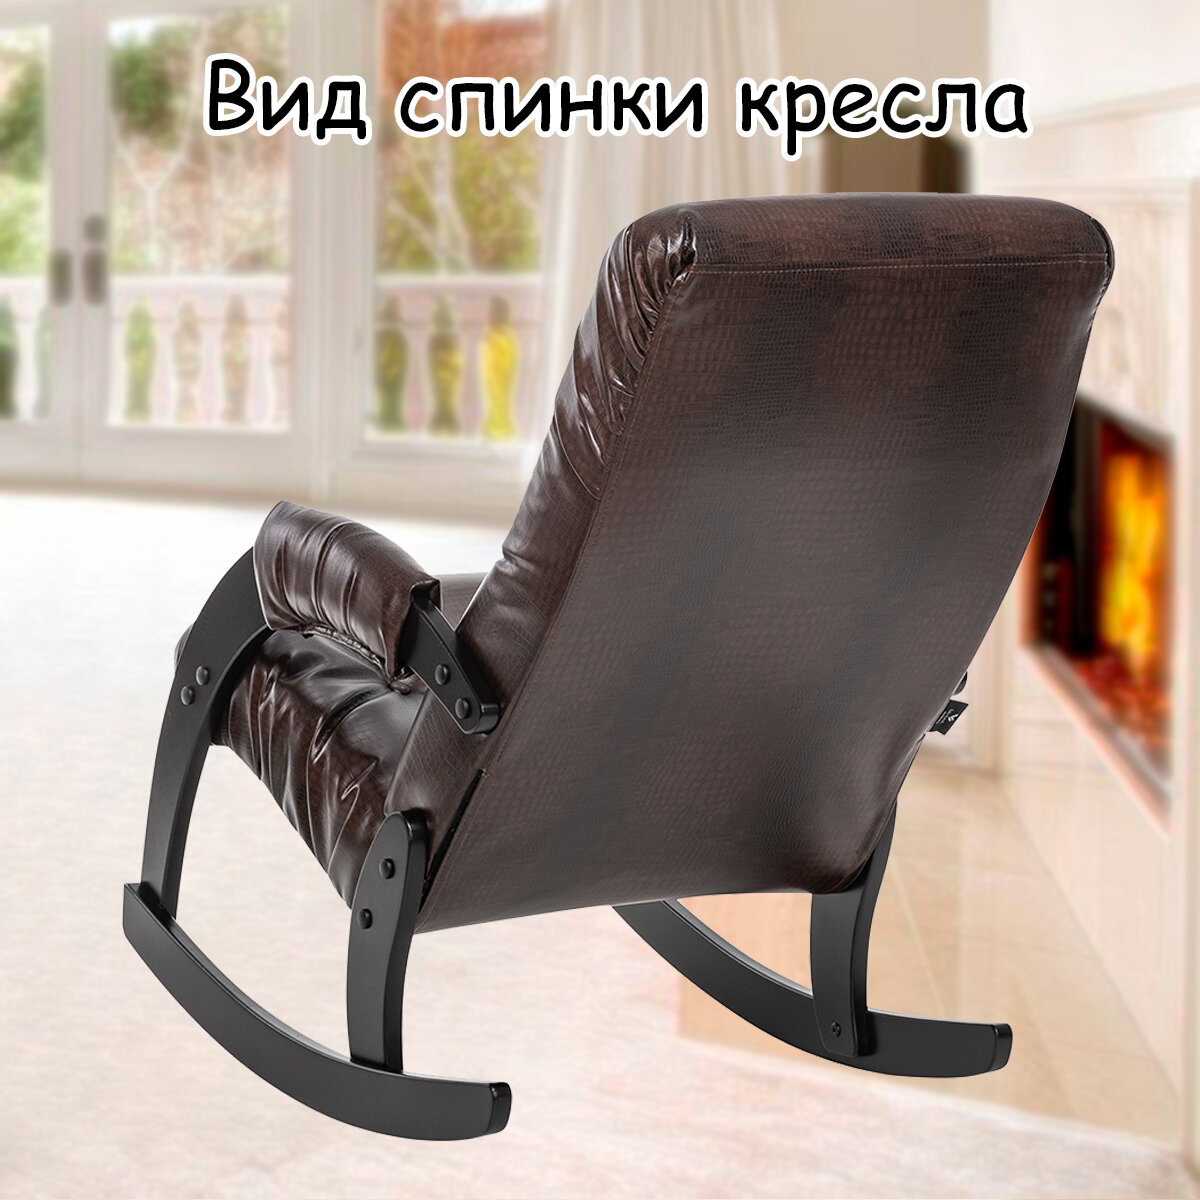 Кресло-качалка для взрослых 54х95х100 см, модель 67, экокожа, цвет: Antik crocodile (коричневый), каркас: Venge (черный) - фотография № 8